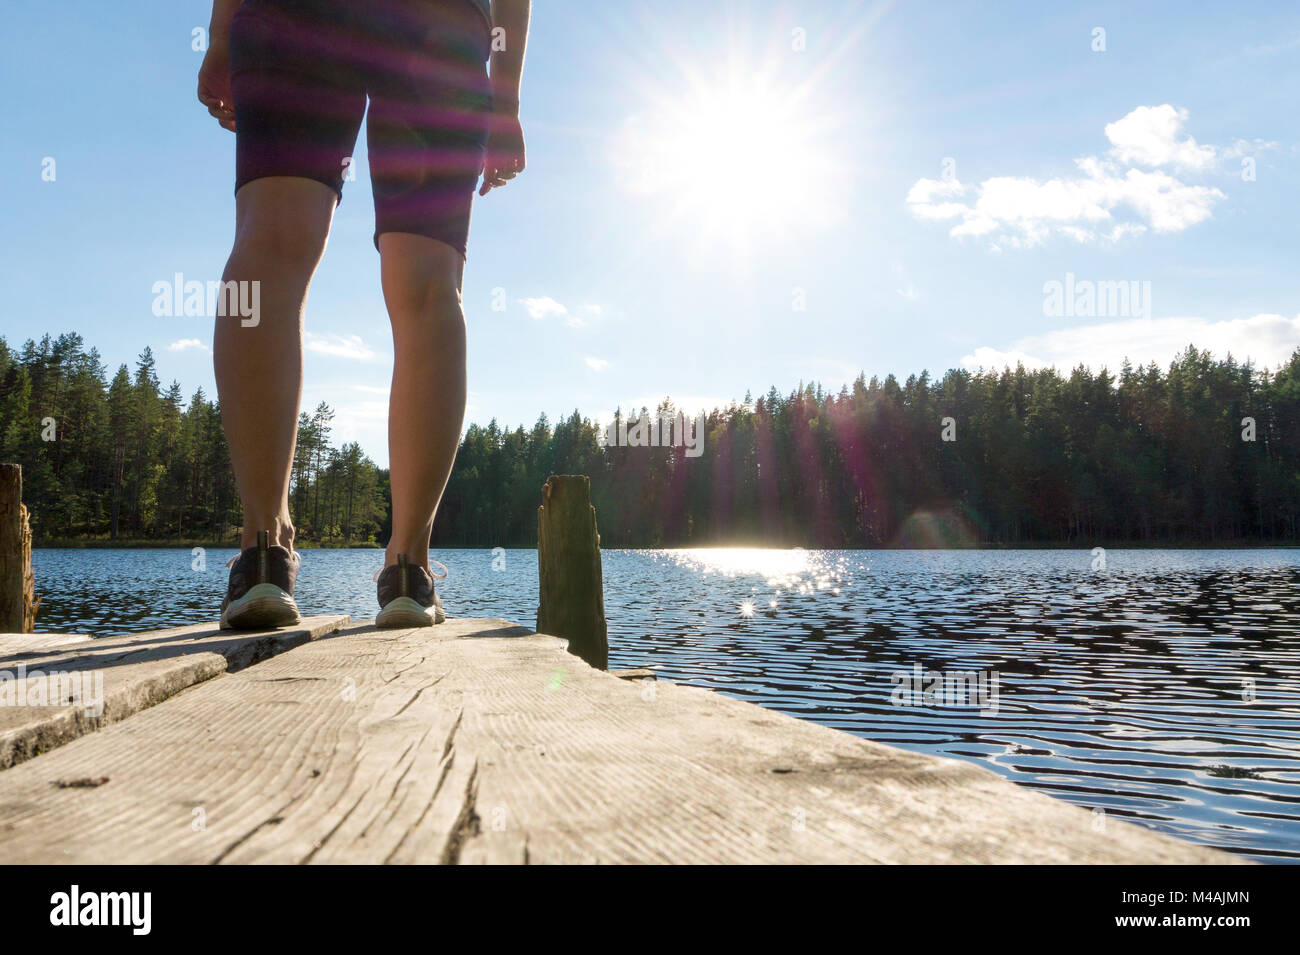 Junge Frau auf einem alten hölzernen Dock und Pier an einem See im Sommer in Finnland. Sonne im blauen Himmel. Traditionelle finnische Blick in die Natur. Stockfoto